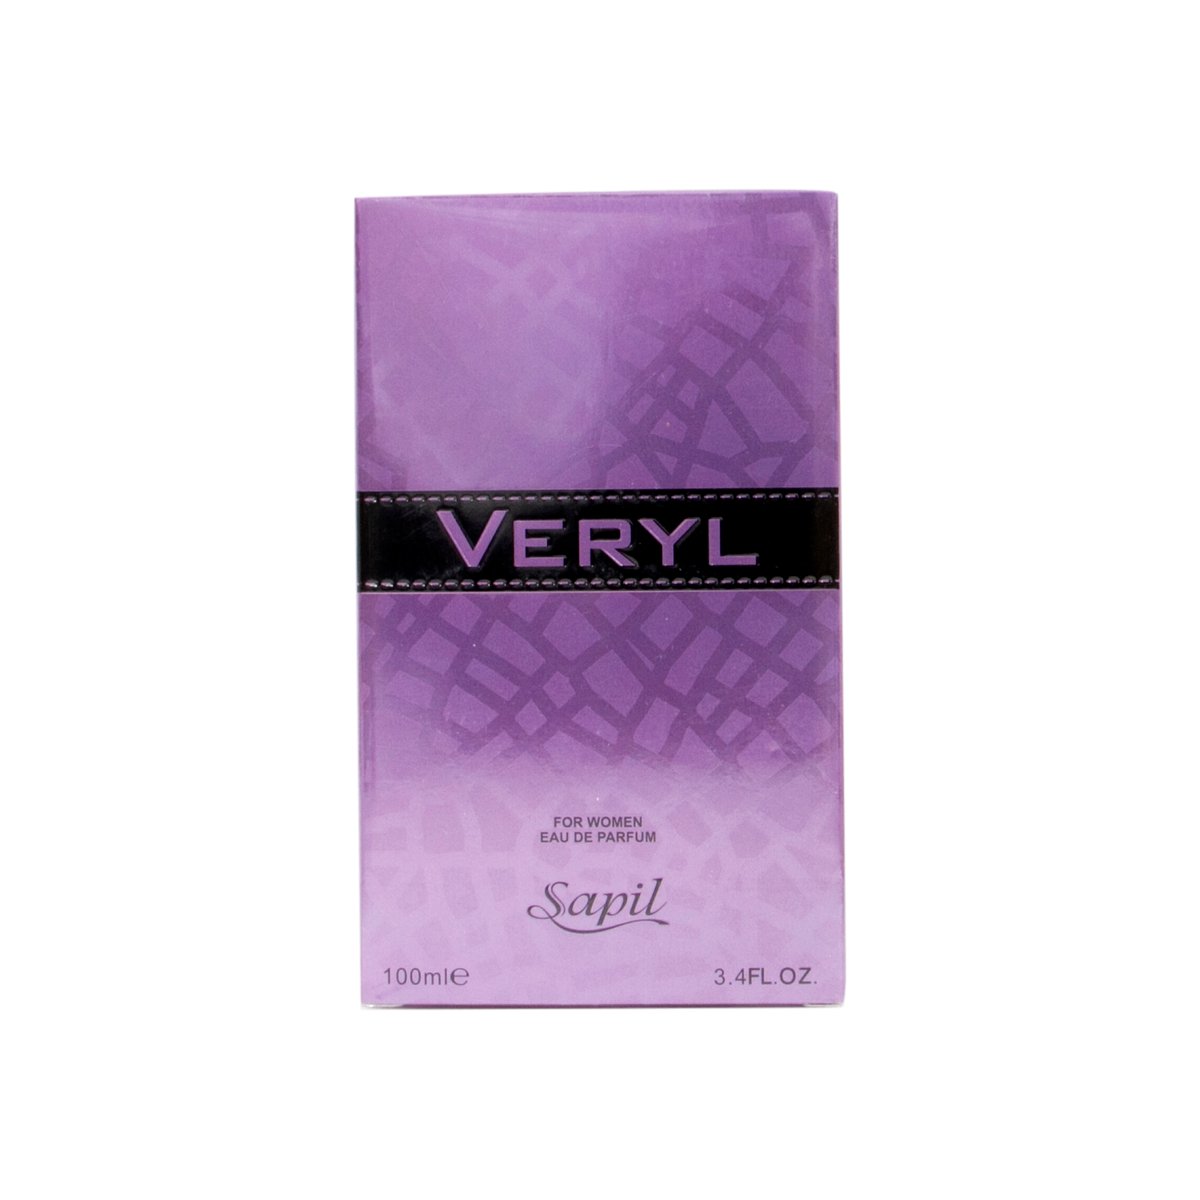 Sapil Veryl EDP For Women 100 ml